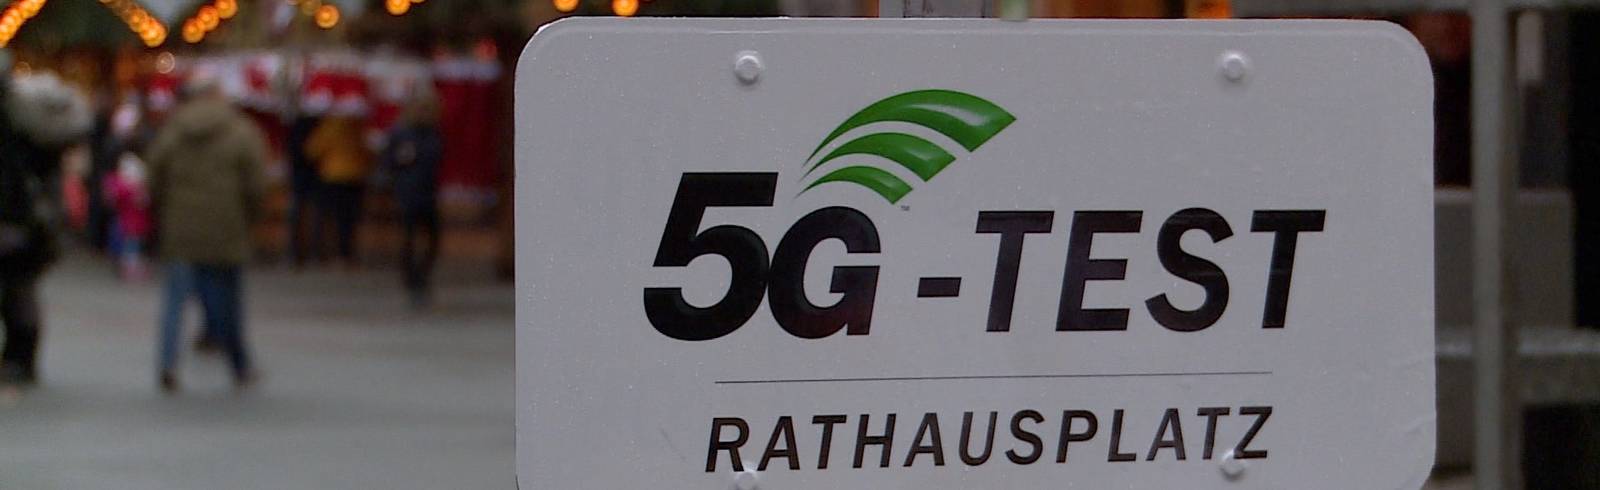 5G-Test am Rathausplatz gestartet.